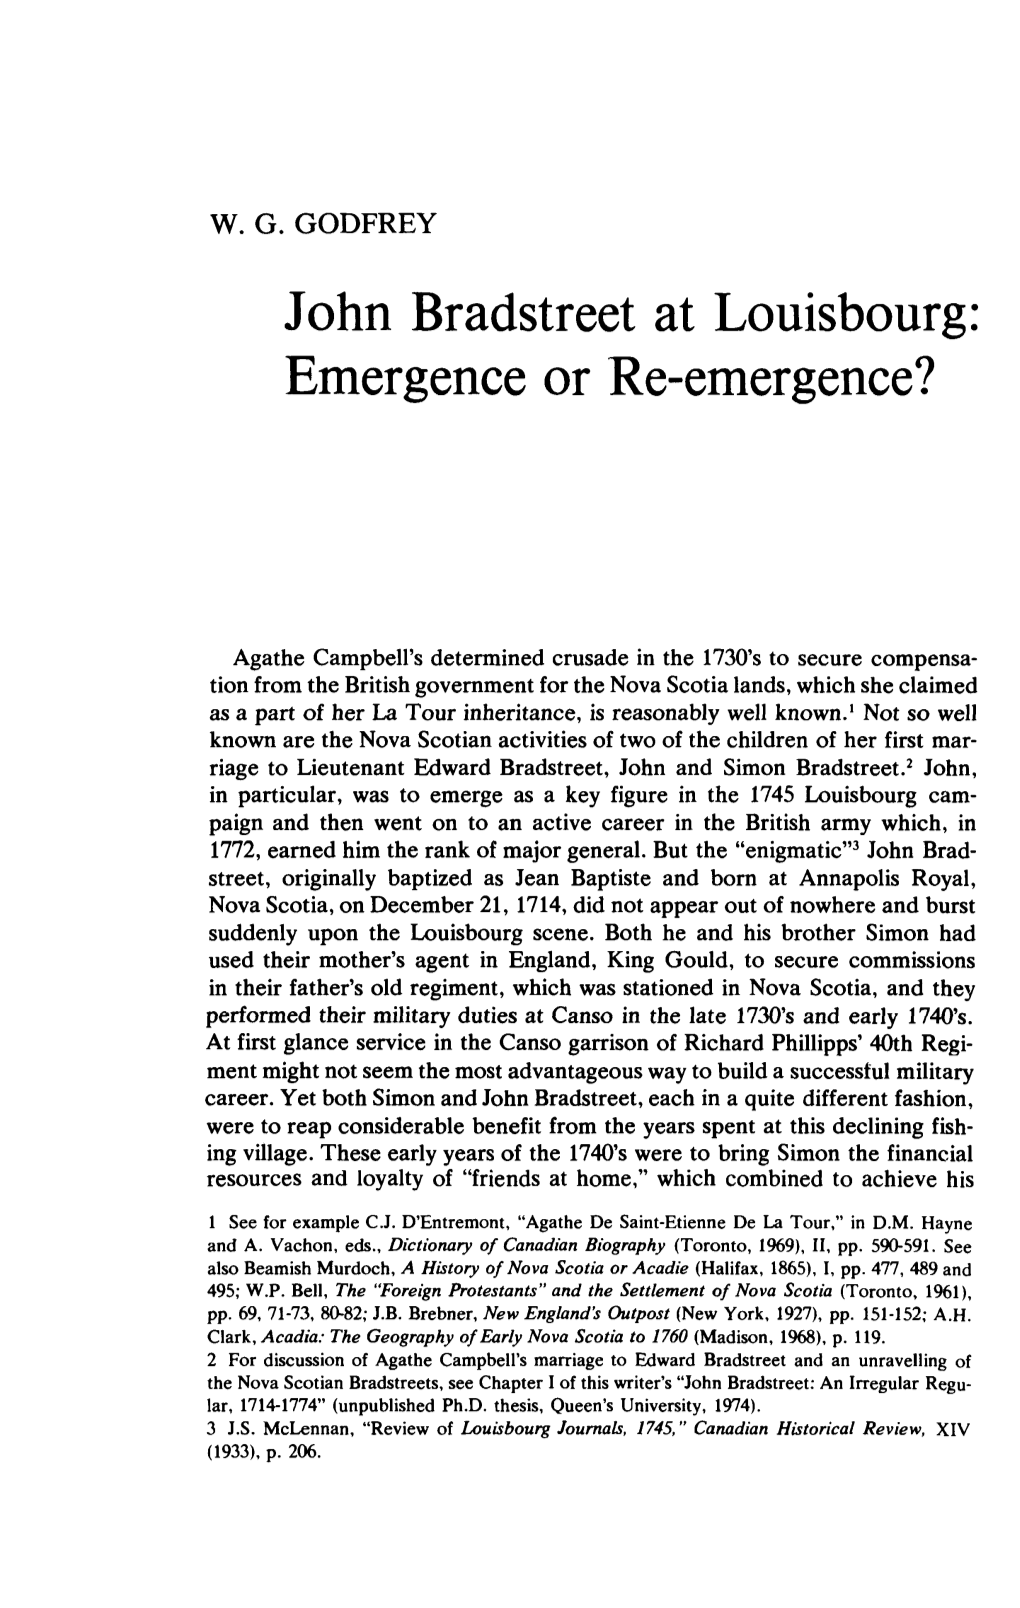 John Bradstreet at Louisbourg: Emergence Or Re-Emergence?